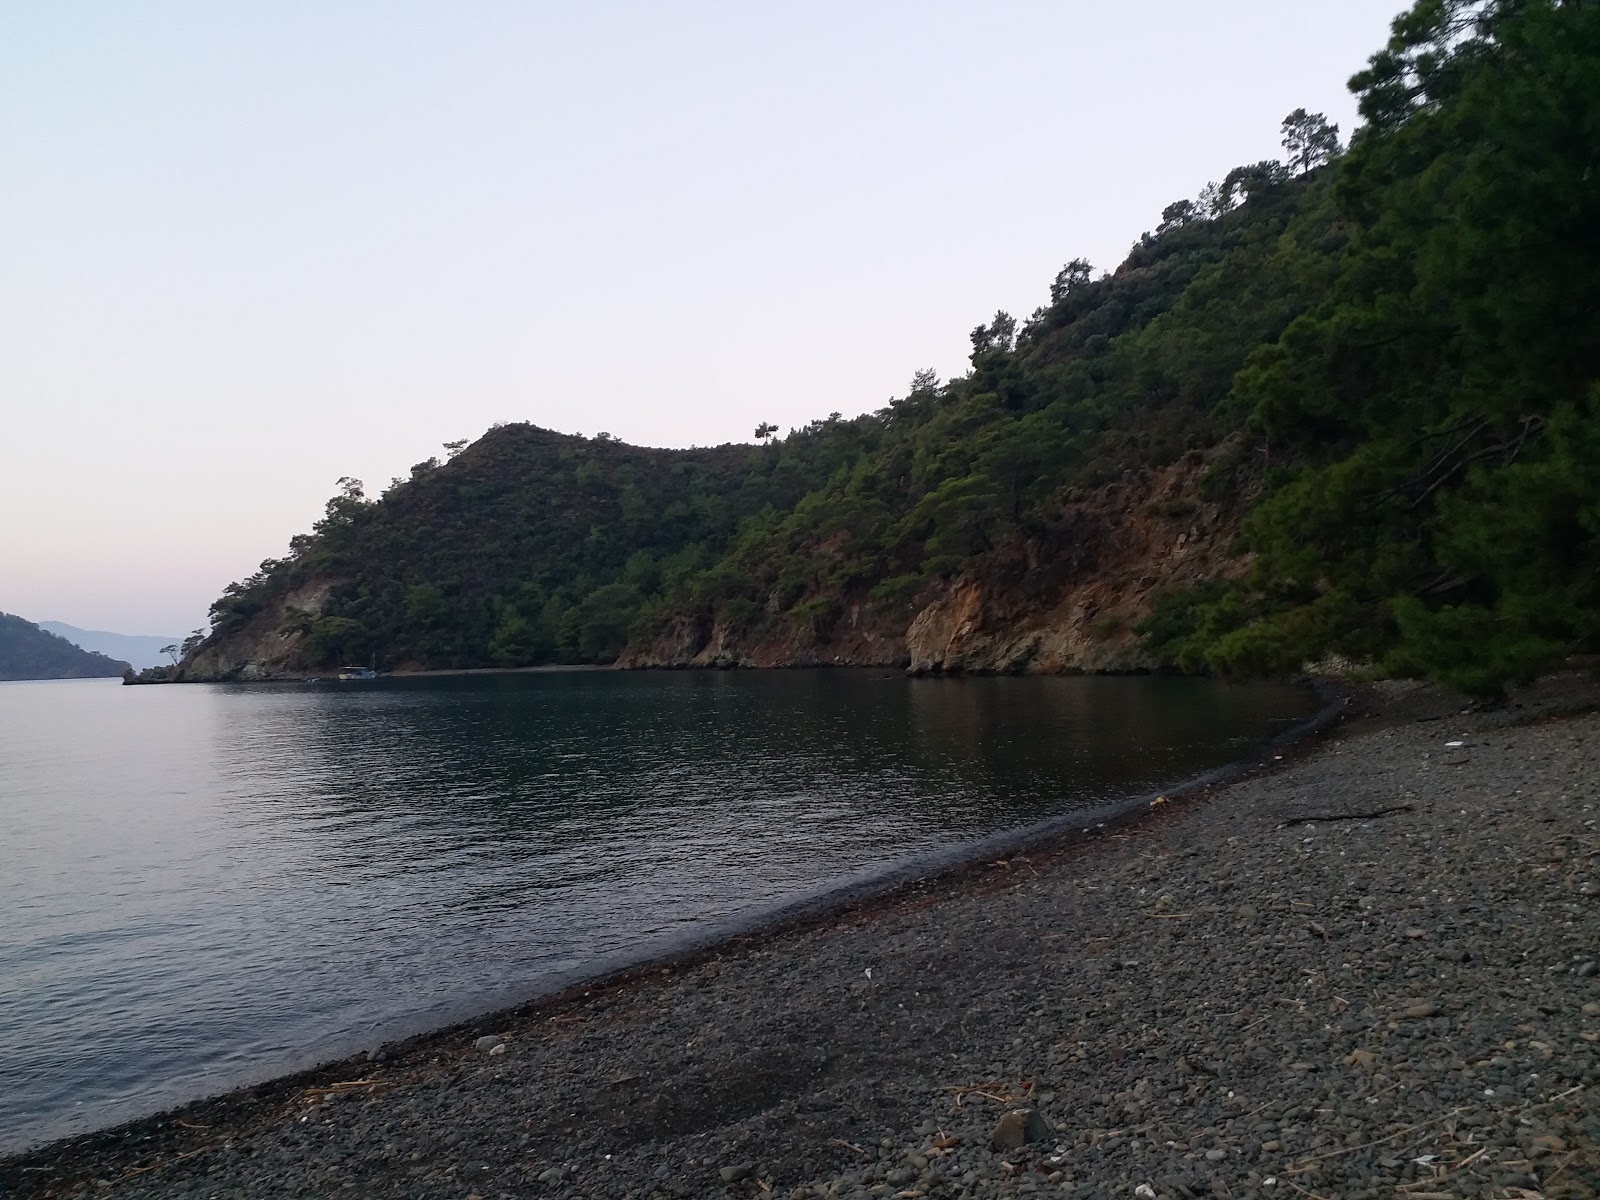 Fotografie cu Inlice beach II cu o suprafață de apă pură albastră